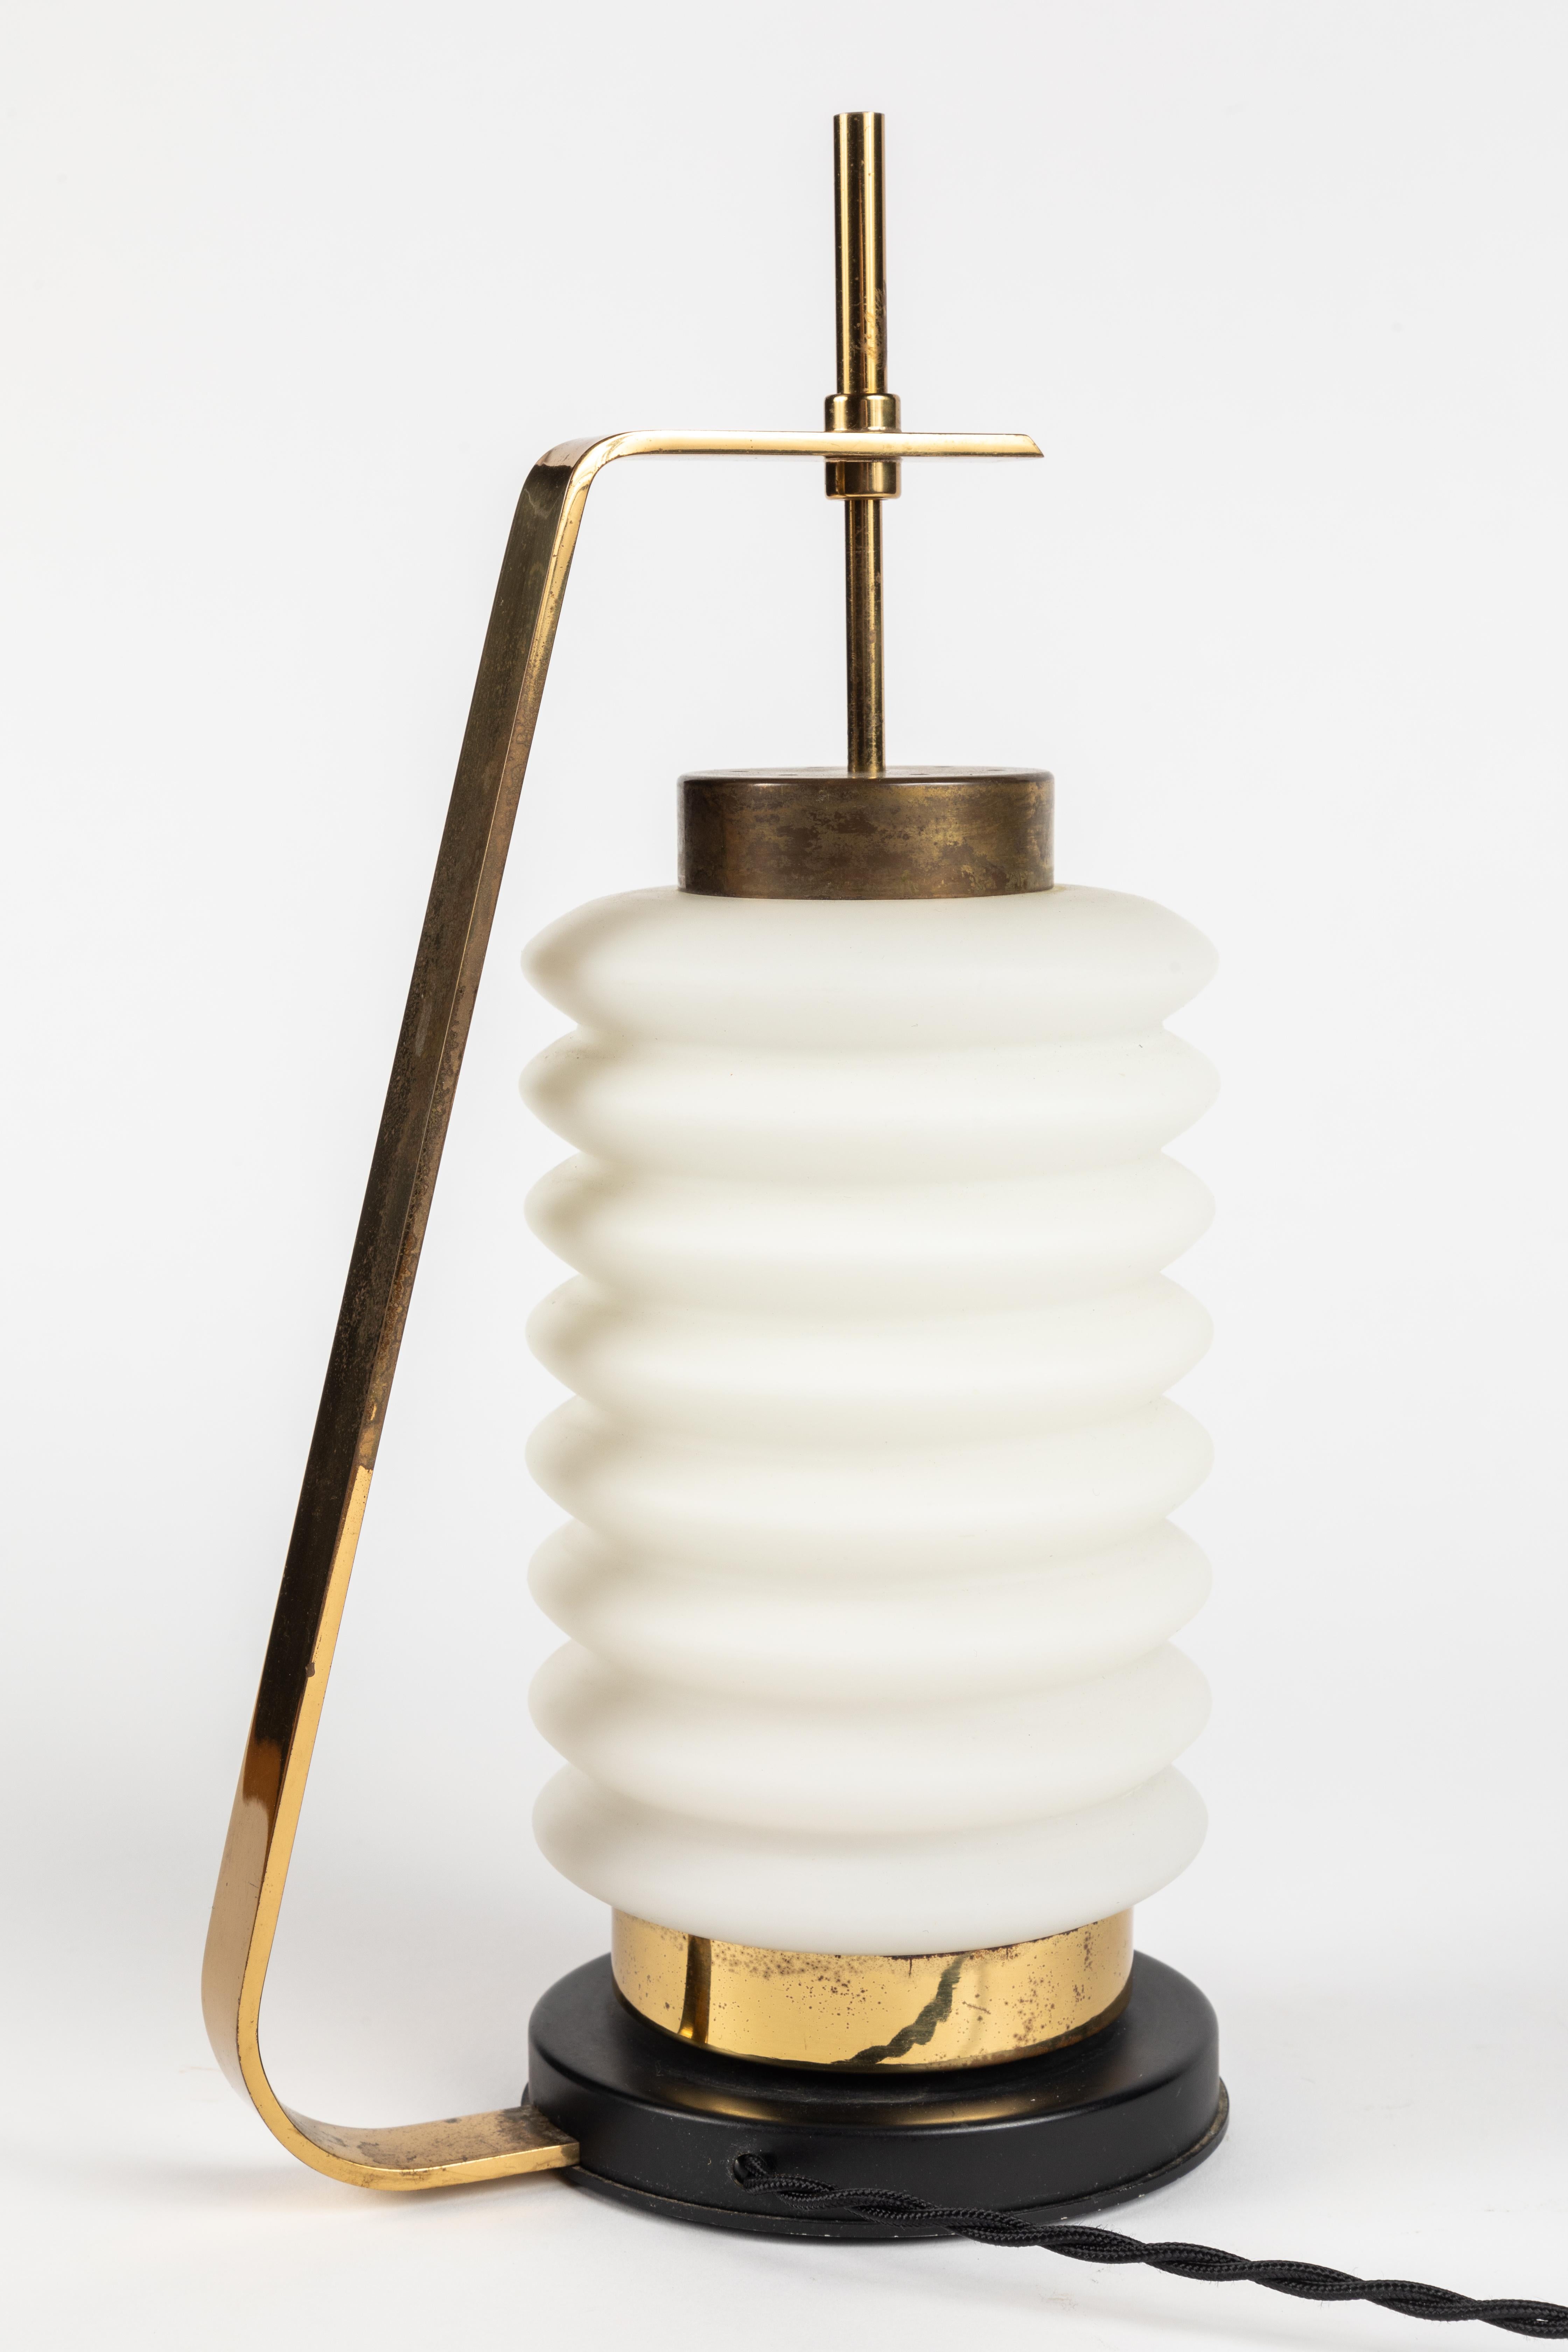 Brass Angelo Lelli Model 12795 Table Lamp for Arredoluce, circa 1950